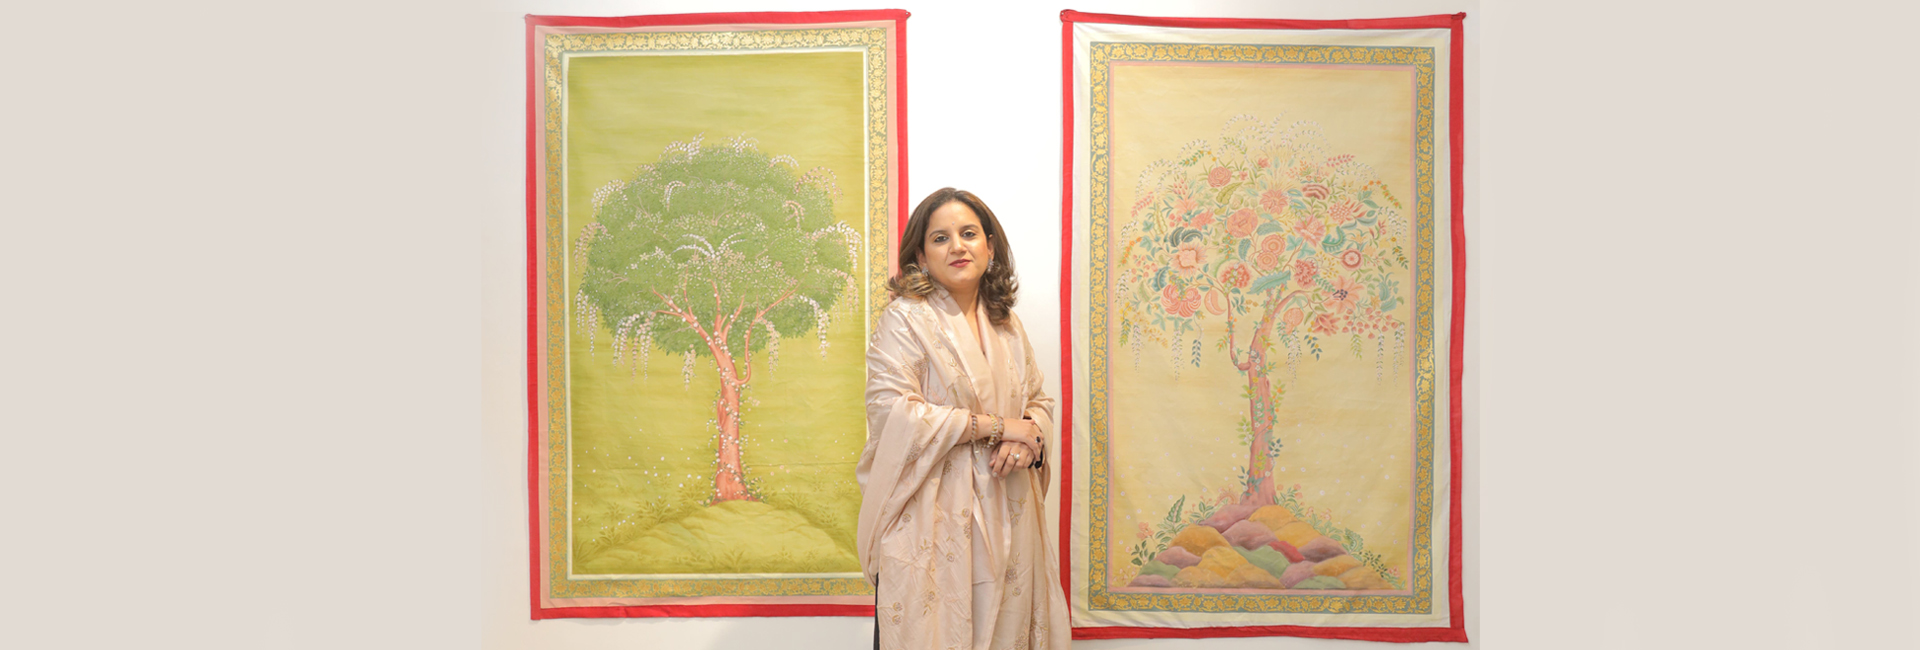 द रॉयल डायरीज : किशनगढ़ की राजकुमारी वैष्णवी खोई हुई कला को पुनर्जीवित करने का काम कर रही हैं